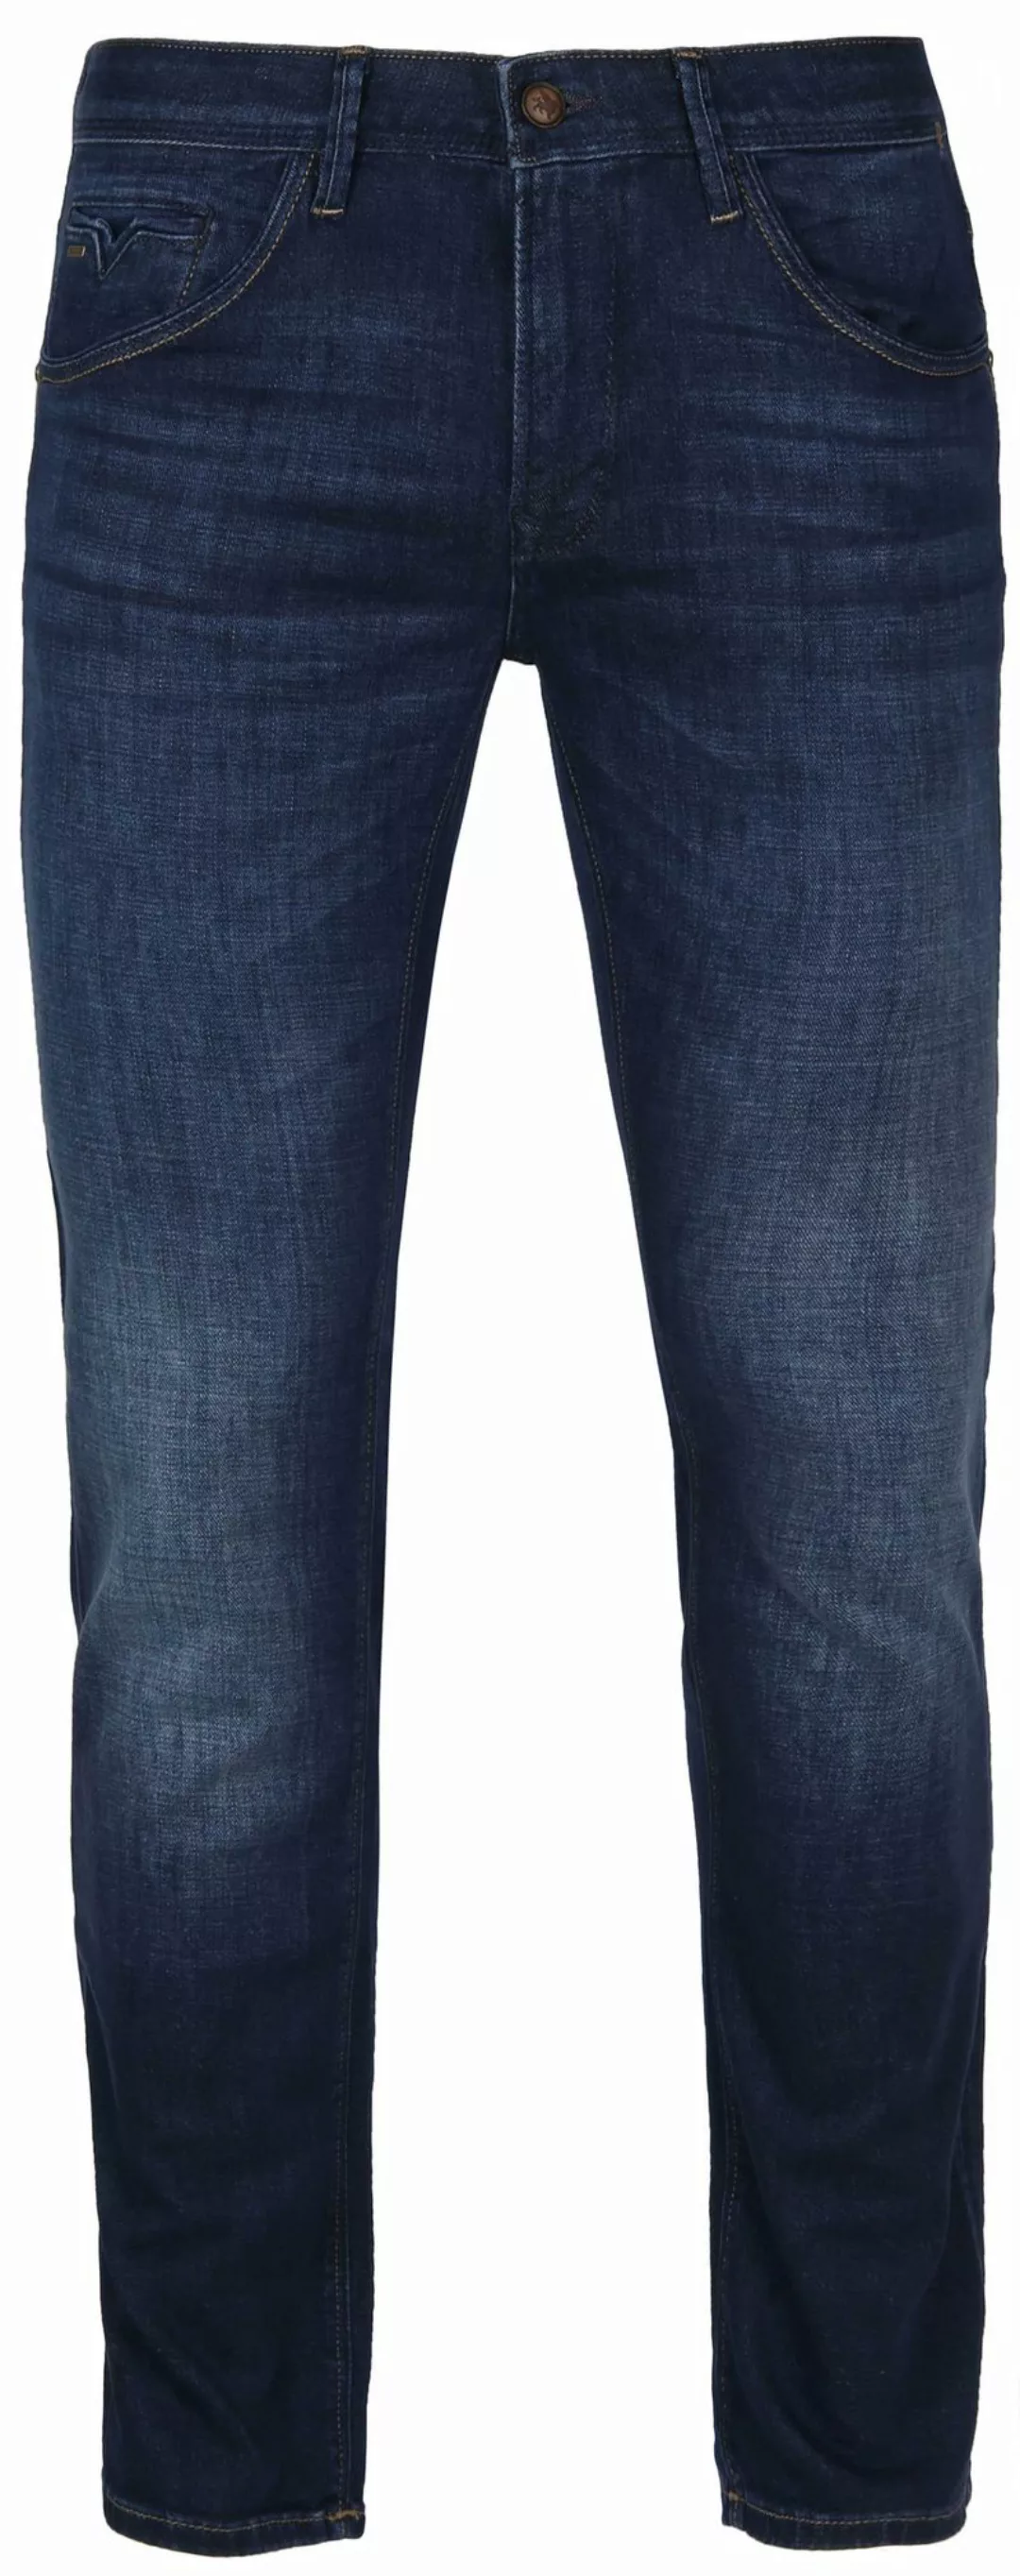 Vanguard V85 Scrambler Jeans SF Dunkelblau - Größe W 30 - L 34 günstig online kaufen